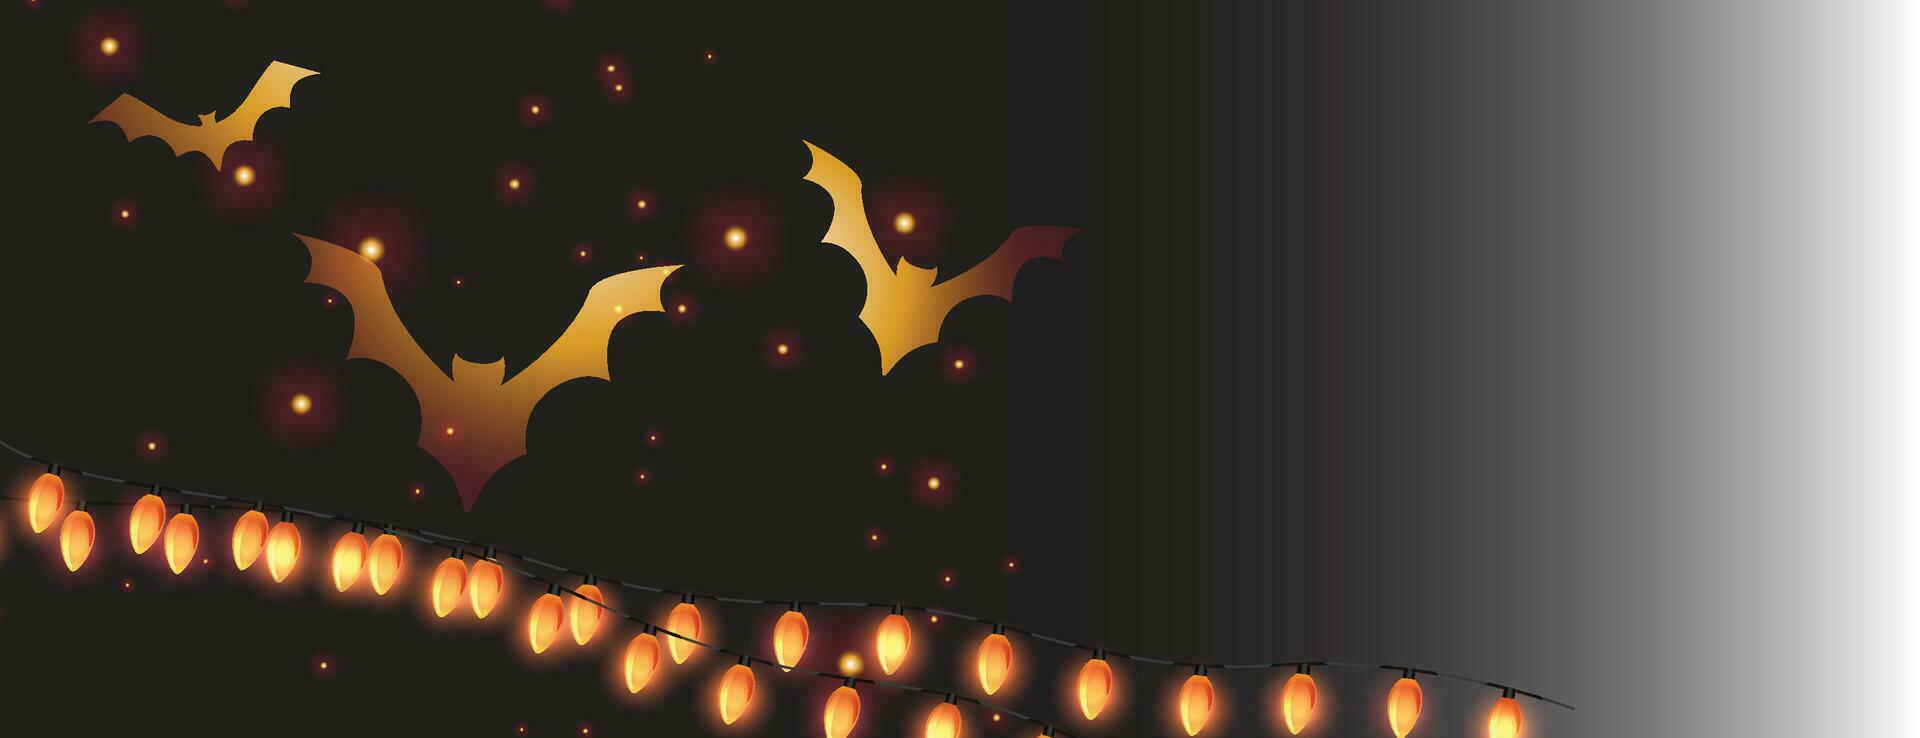 halloween natt bakgrund med fladdermus och fullmåne vektor